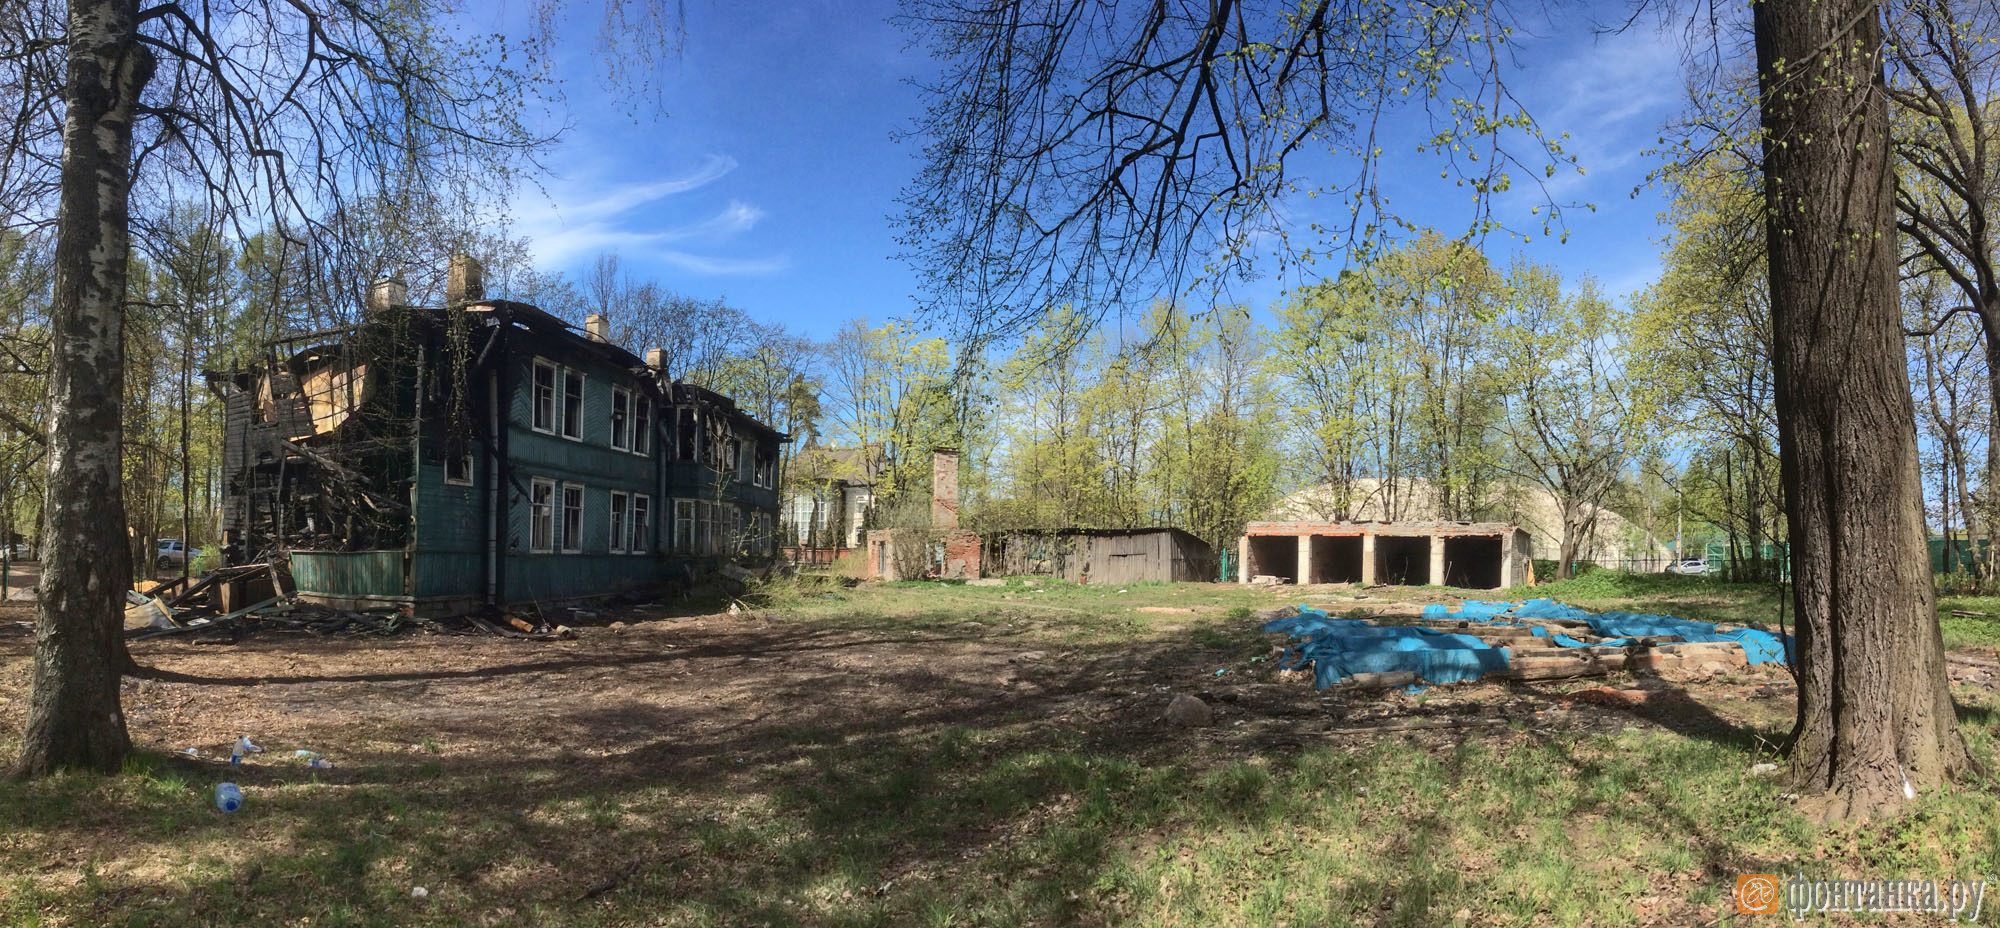 Слева горевшее 21 мая 2017 года здание, справа — территория снесенного памятника<br>